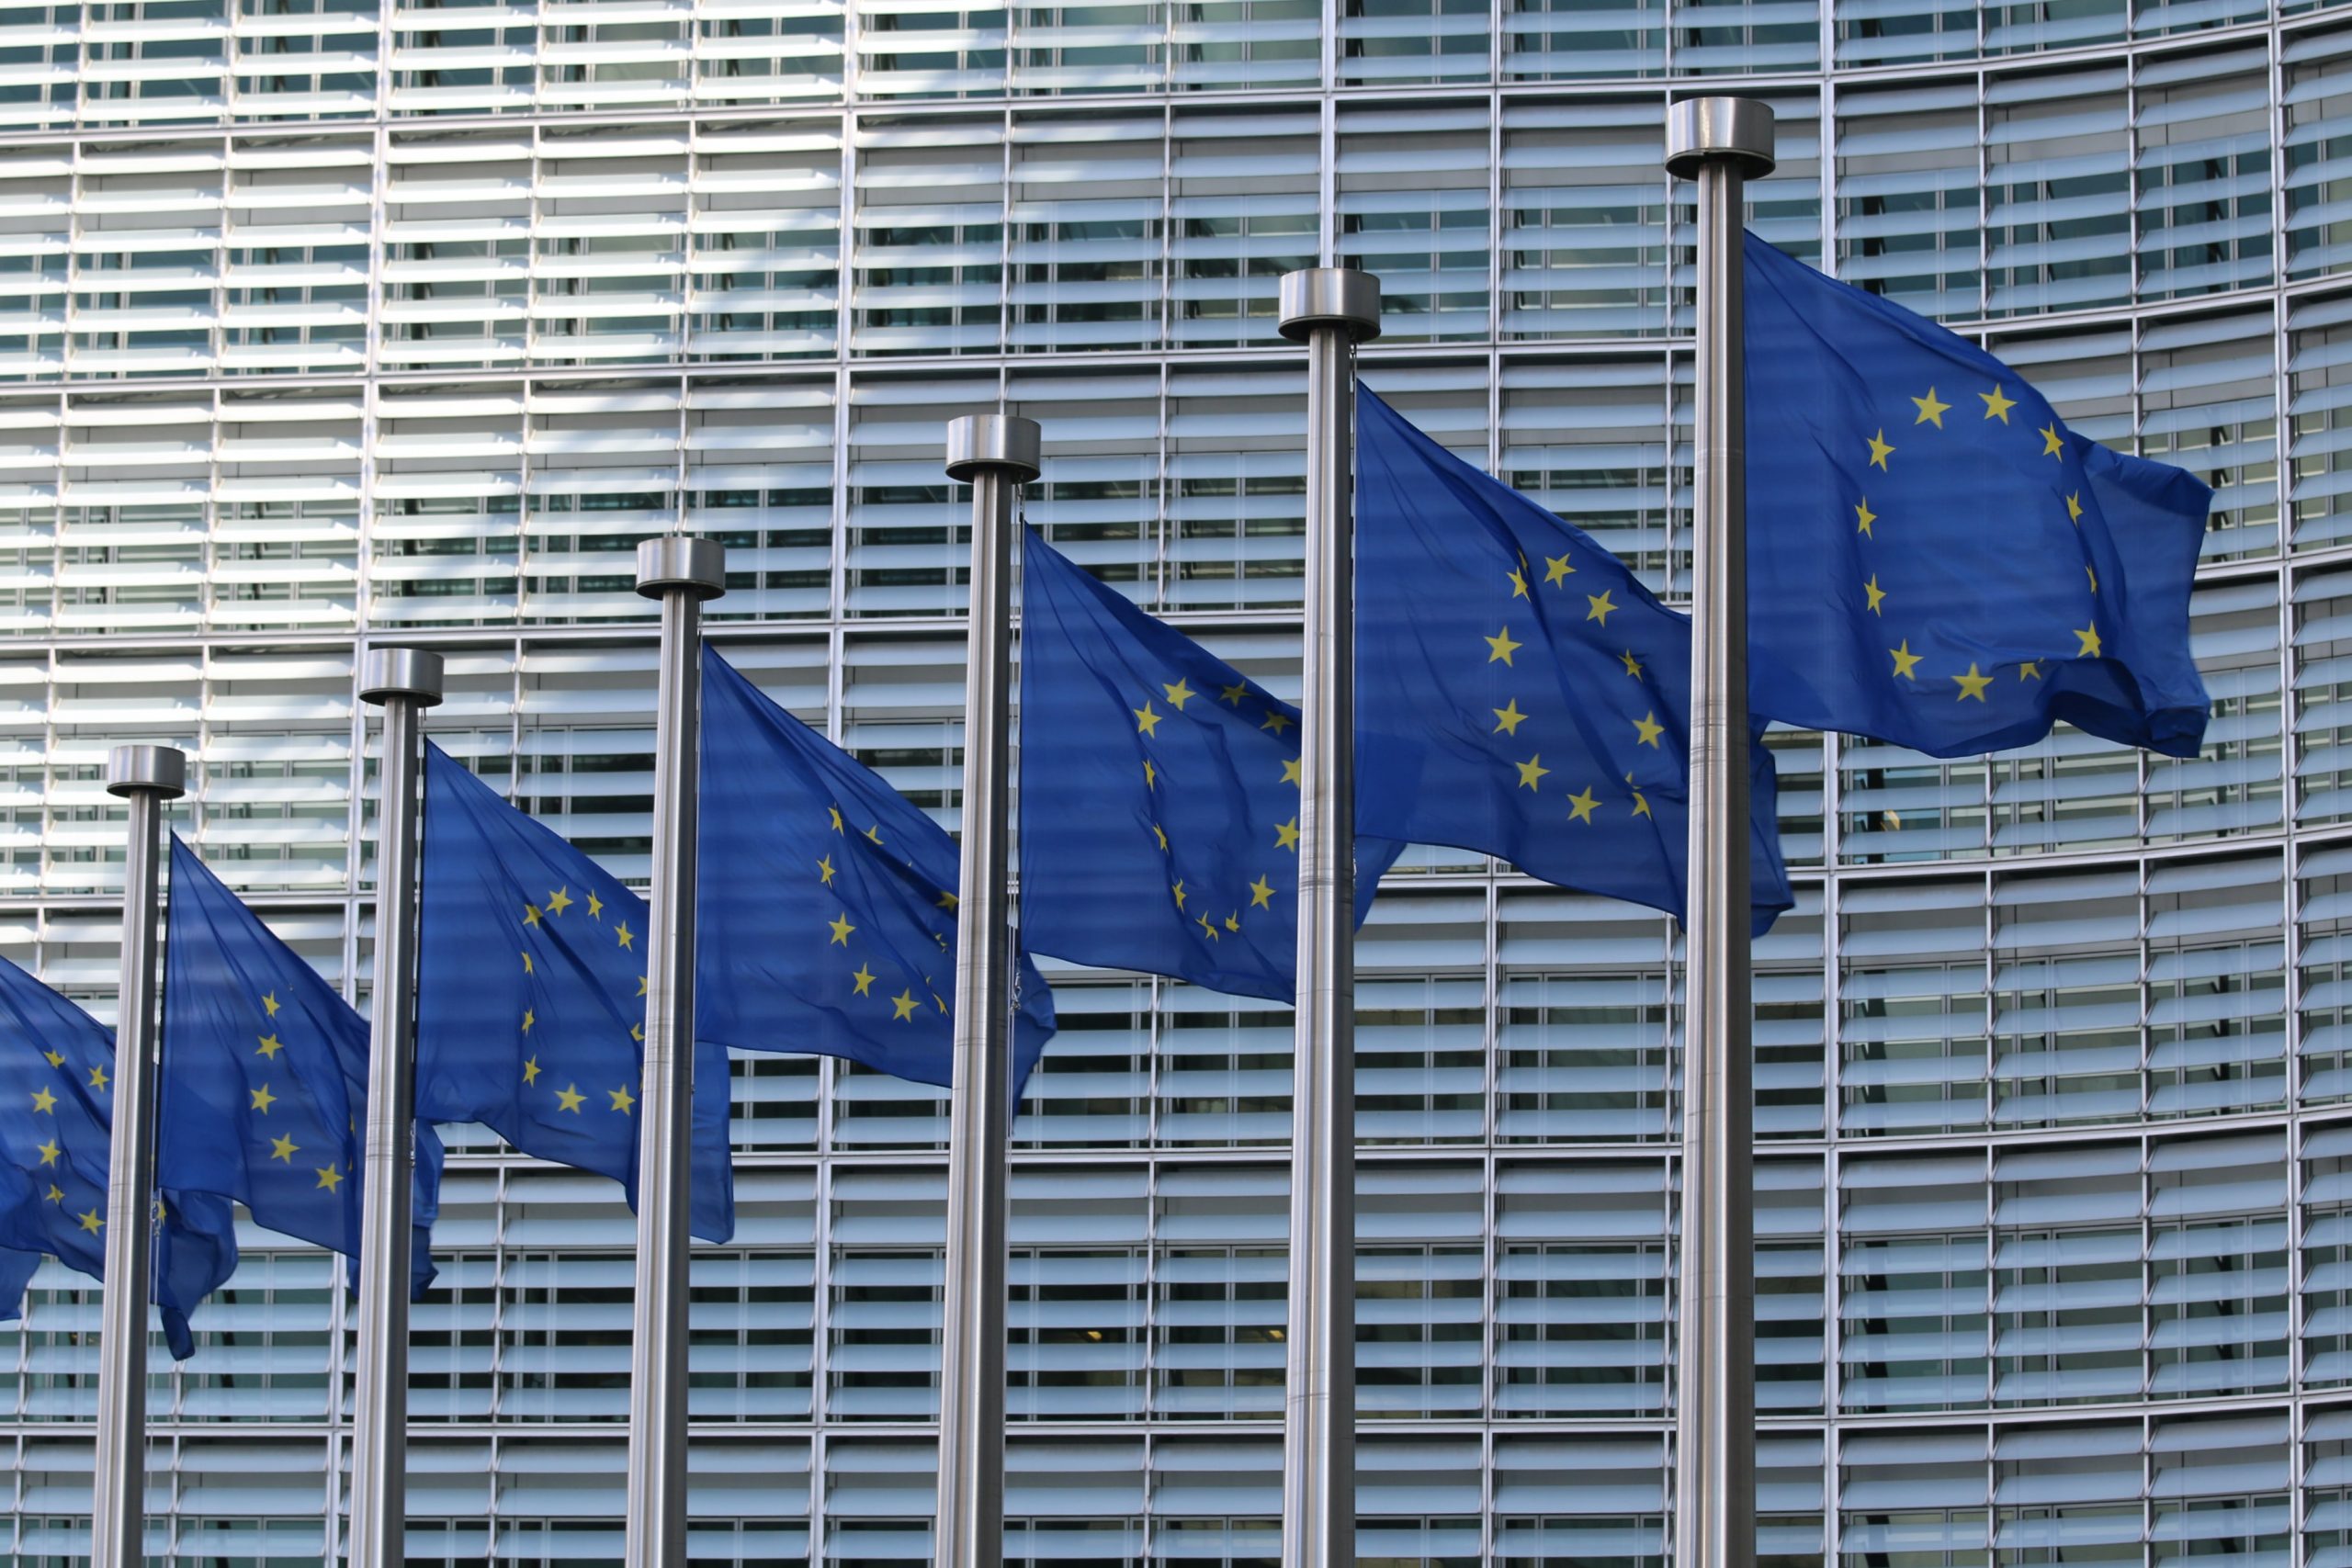 EU flags at the European Commission Berlaymont building. Guillaume Périgois/UNSPLASH